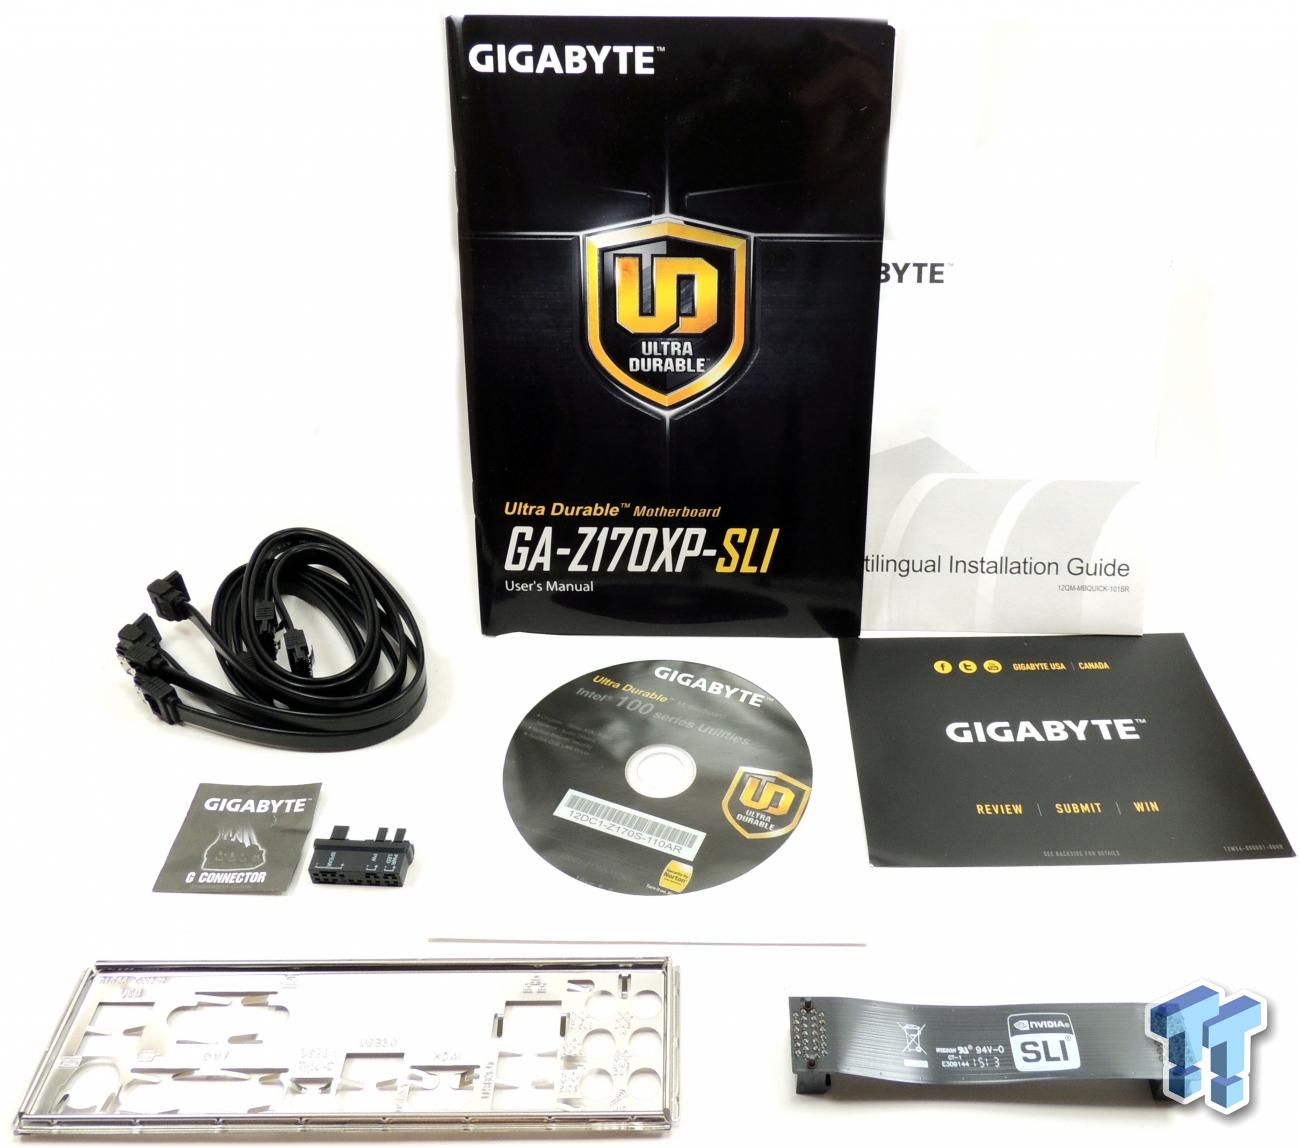 gigabyte ultra durable motherboard sli z170xp-sli